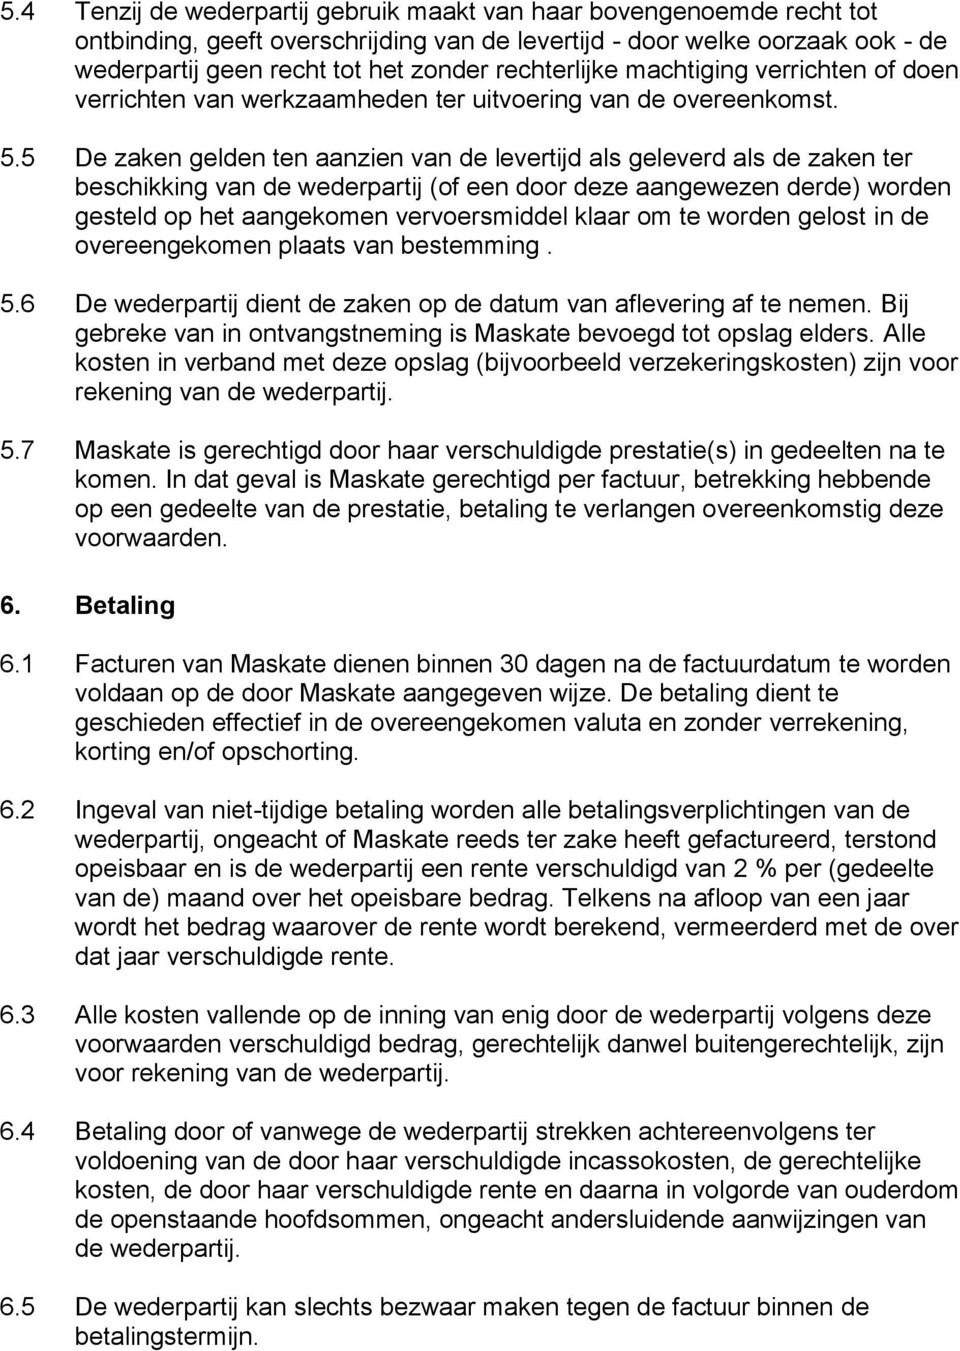 5 De zaken gelden ten aanzien van de levertijd als geleverd als de zaken ter beschikking van de wederpartij (of een door deze aangewezen derde) worden gesteld op het aangekomen vervoersmiddel klaar